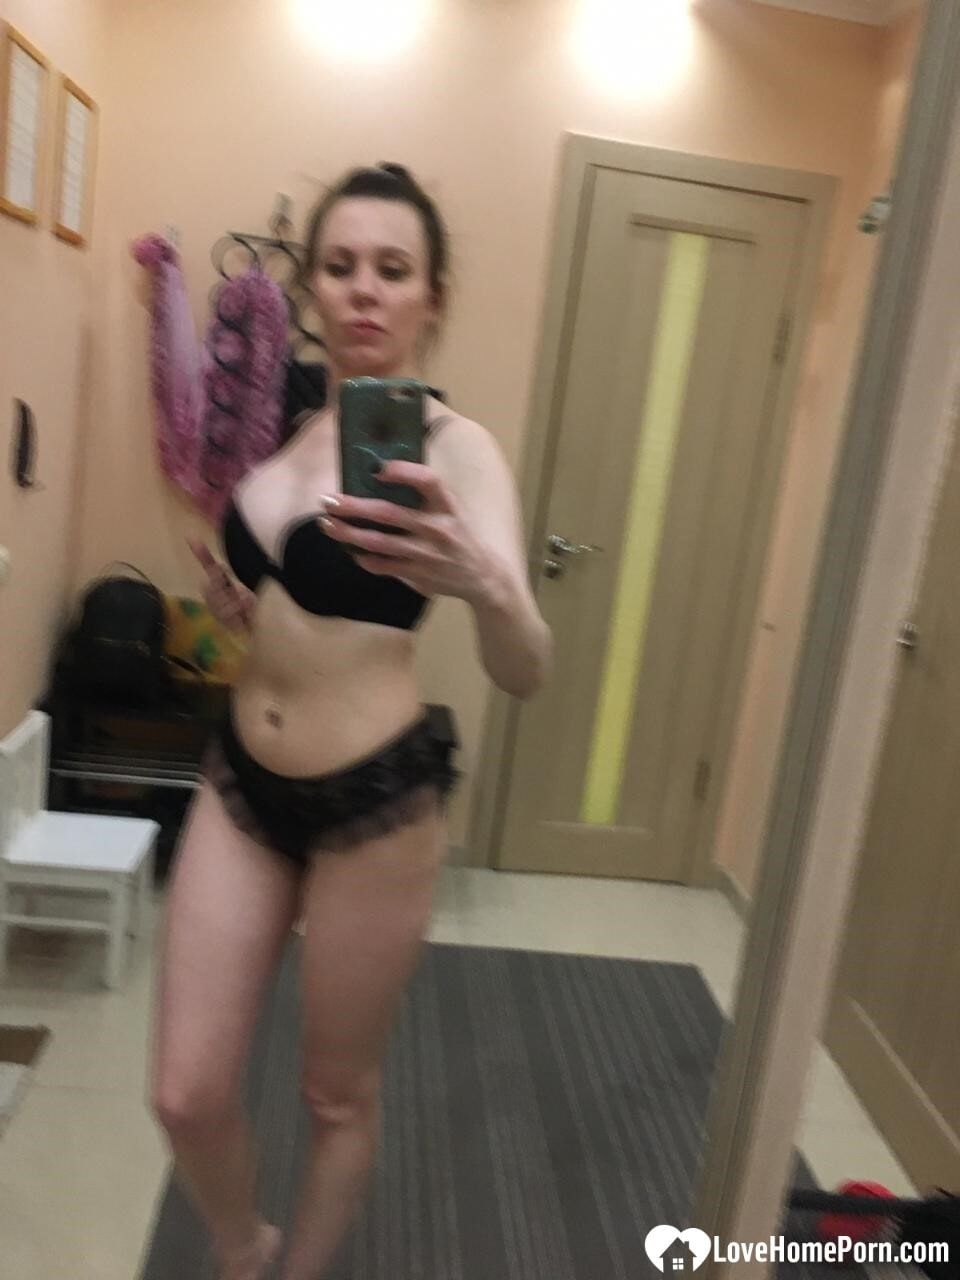 Sexy mirror selfies in my favorite lingerie #20